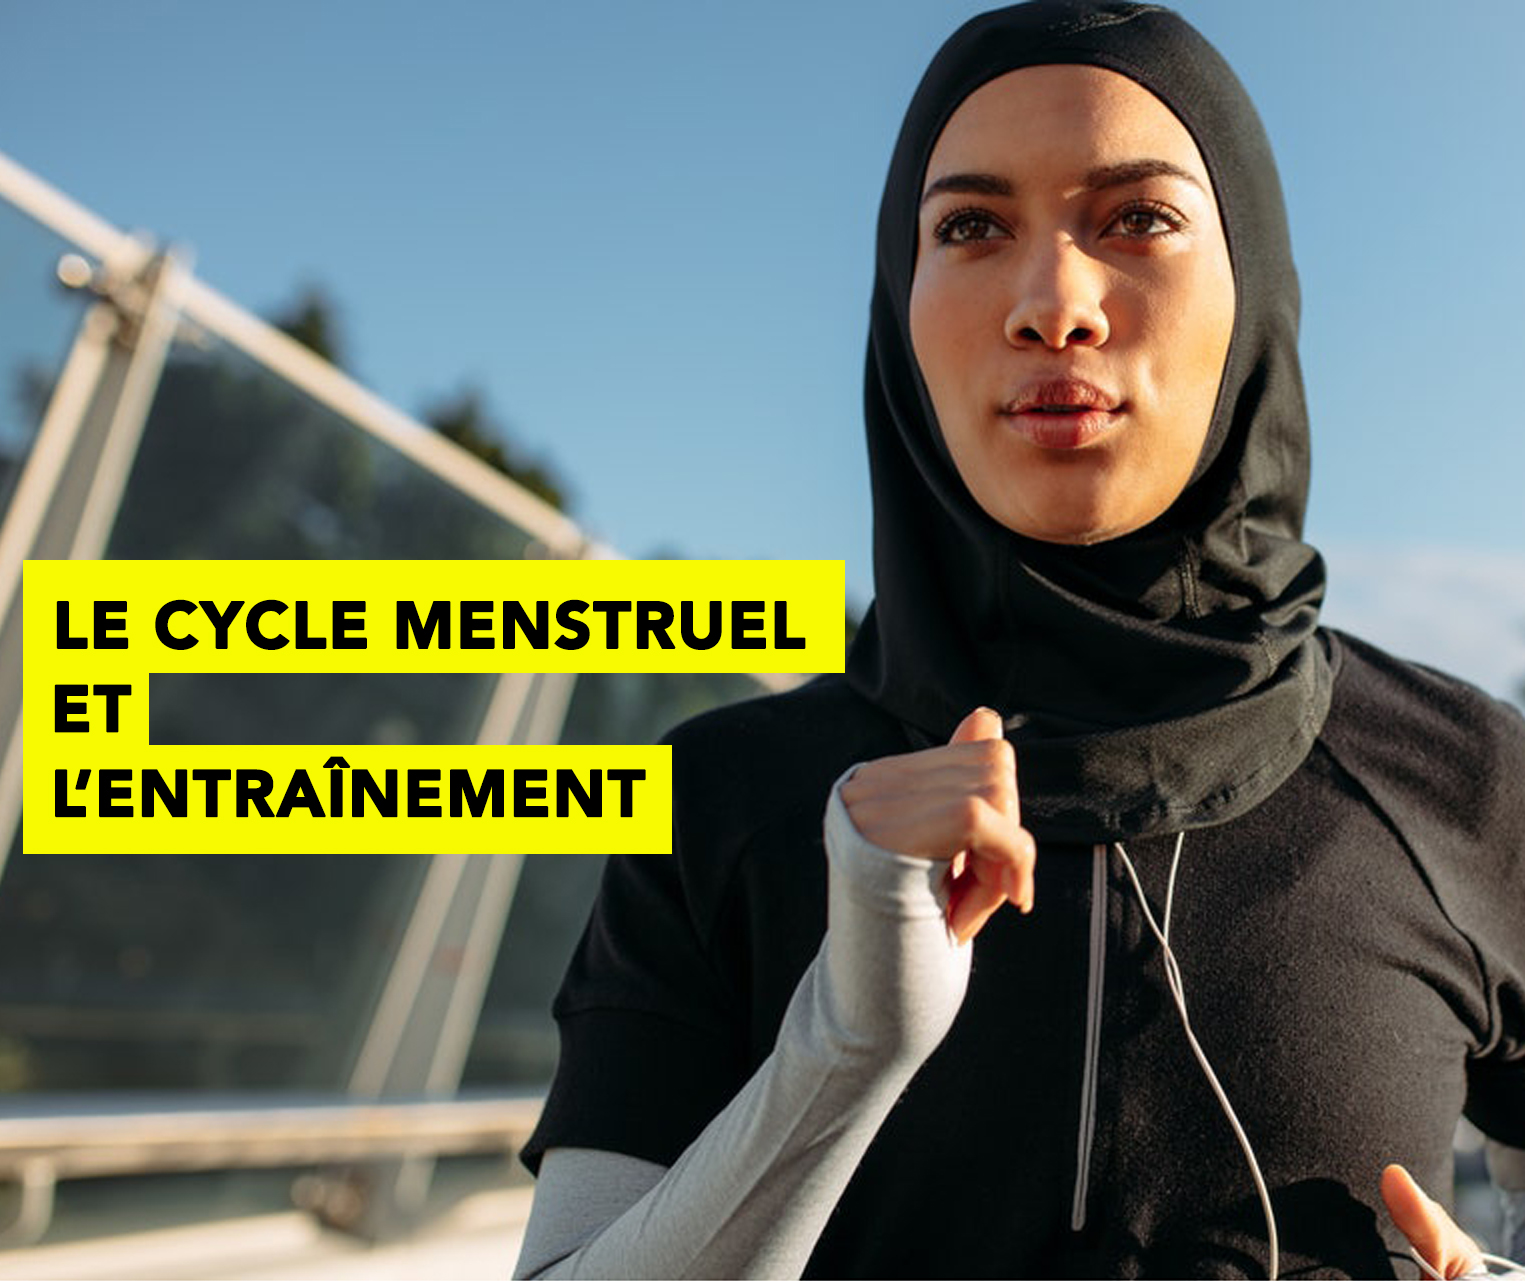 Le cycle menstruel et l'entraînement